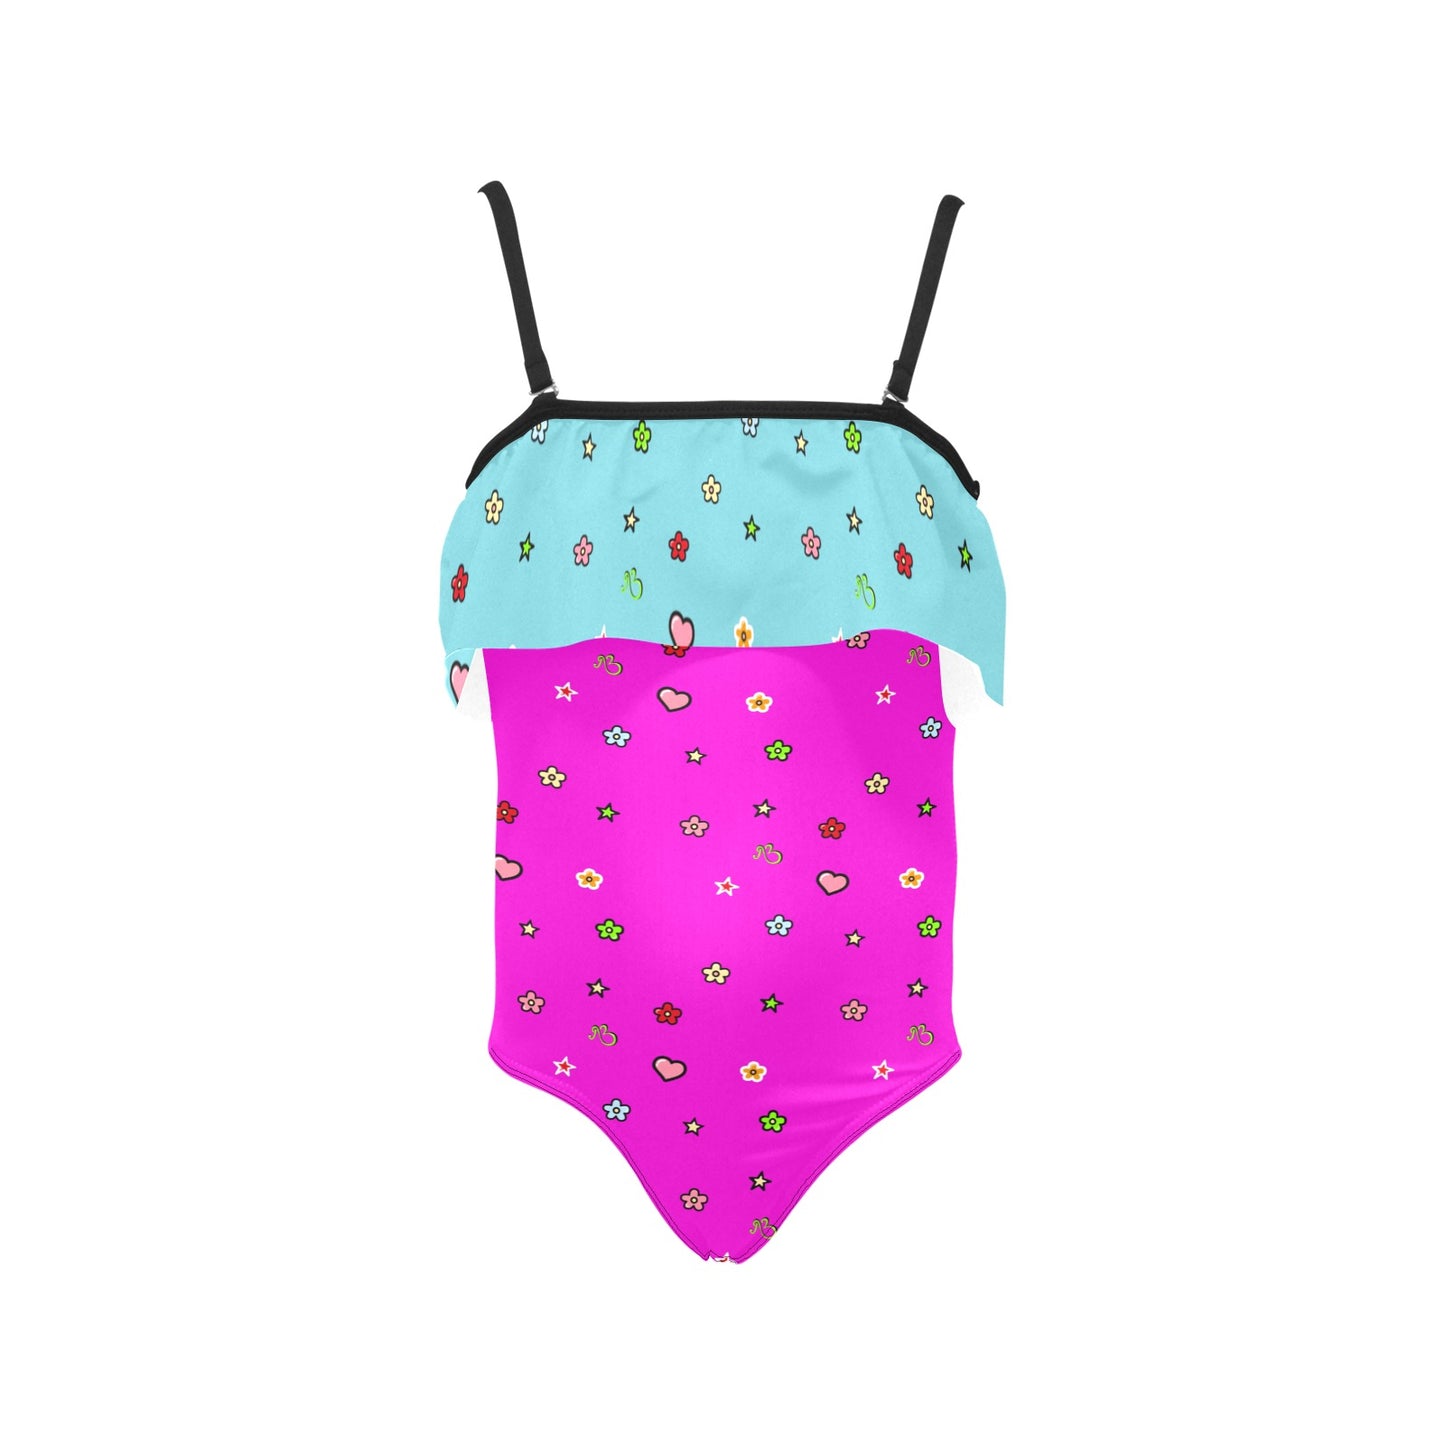 AfriBix Love Heart Girls Ruffle Kids Swimsuit - Pink and Blue